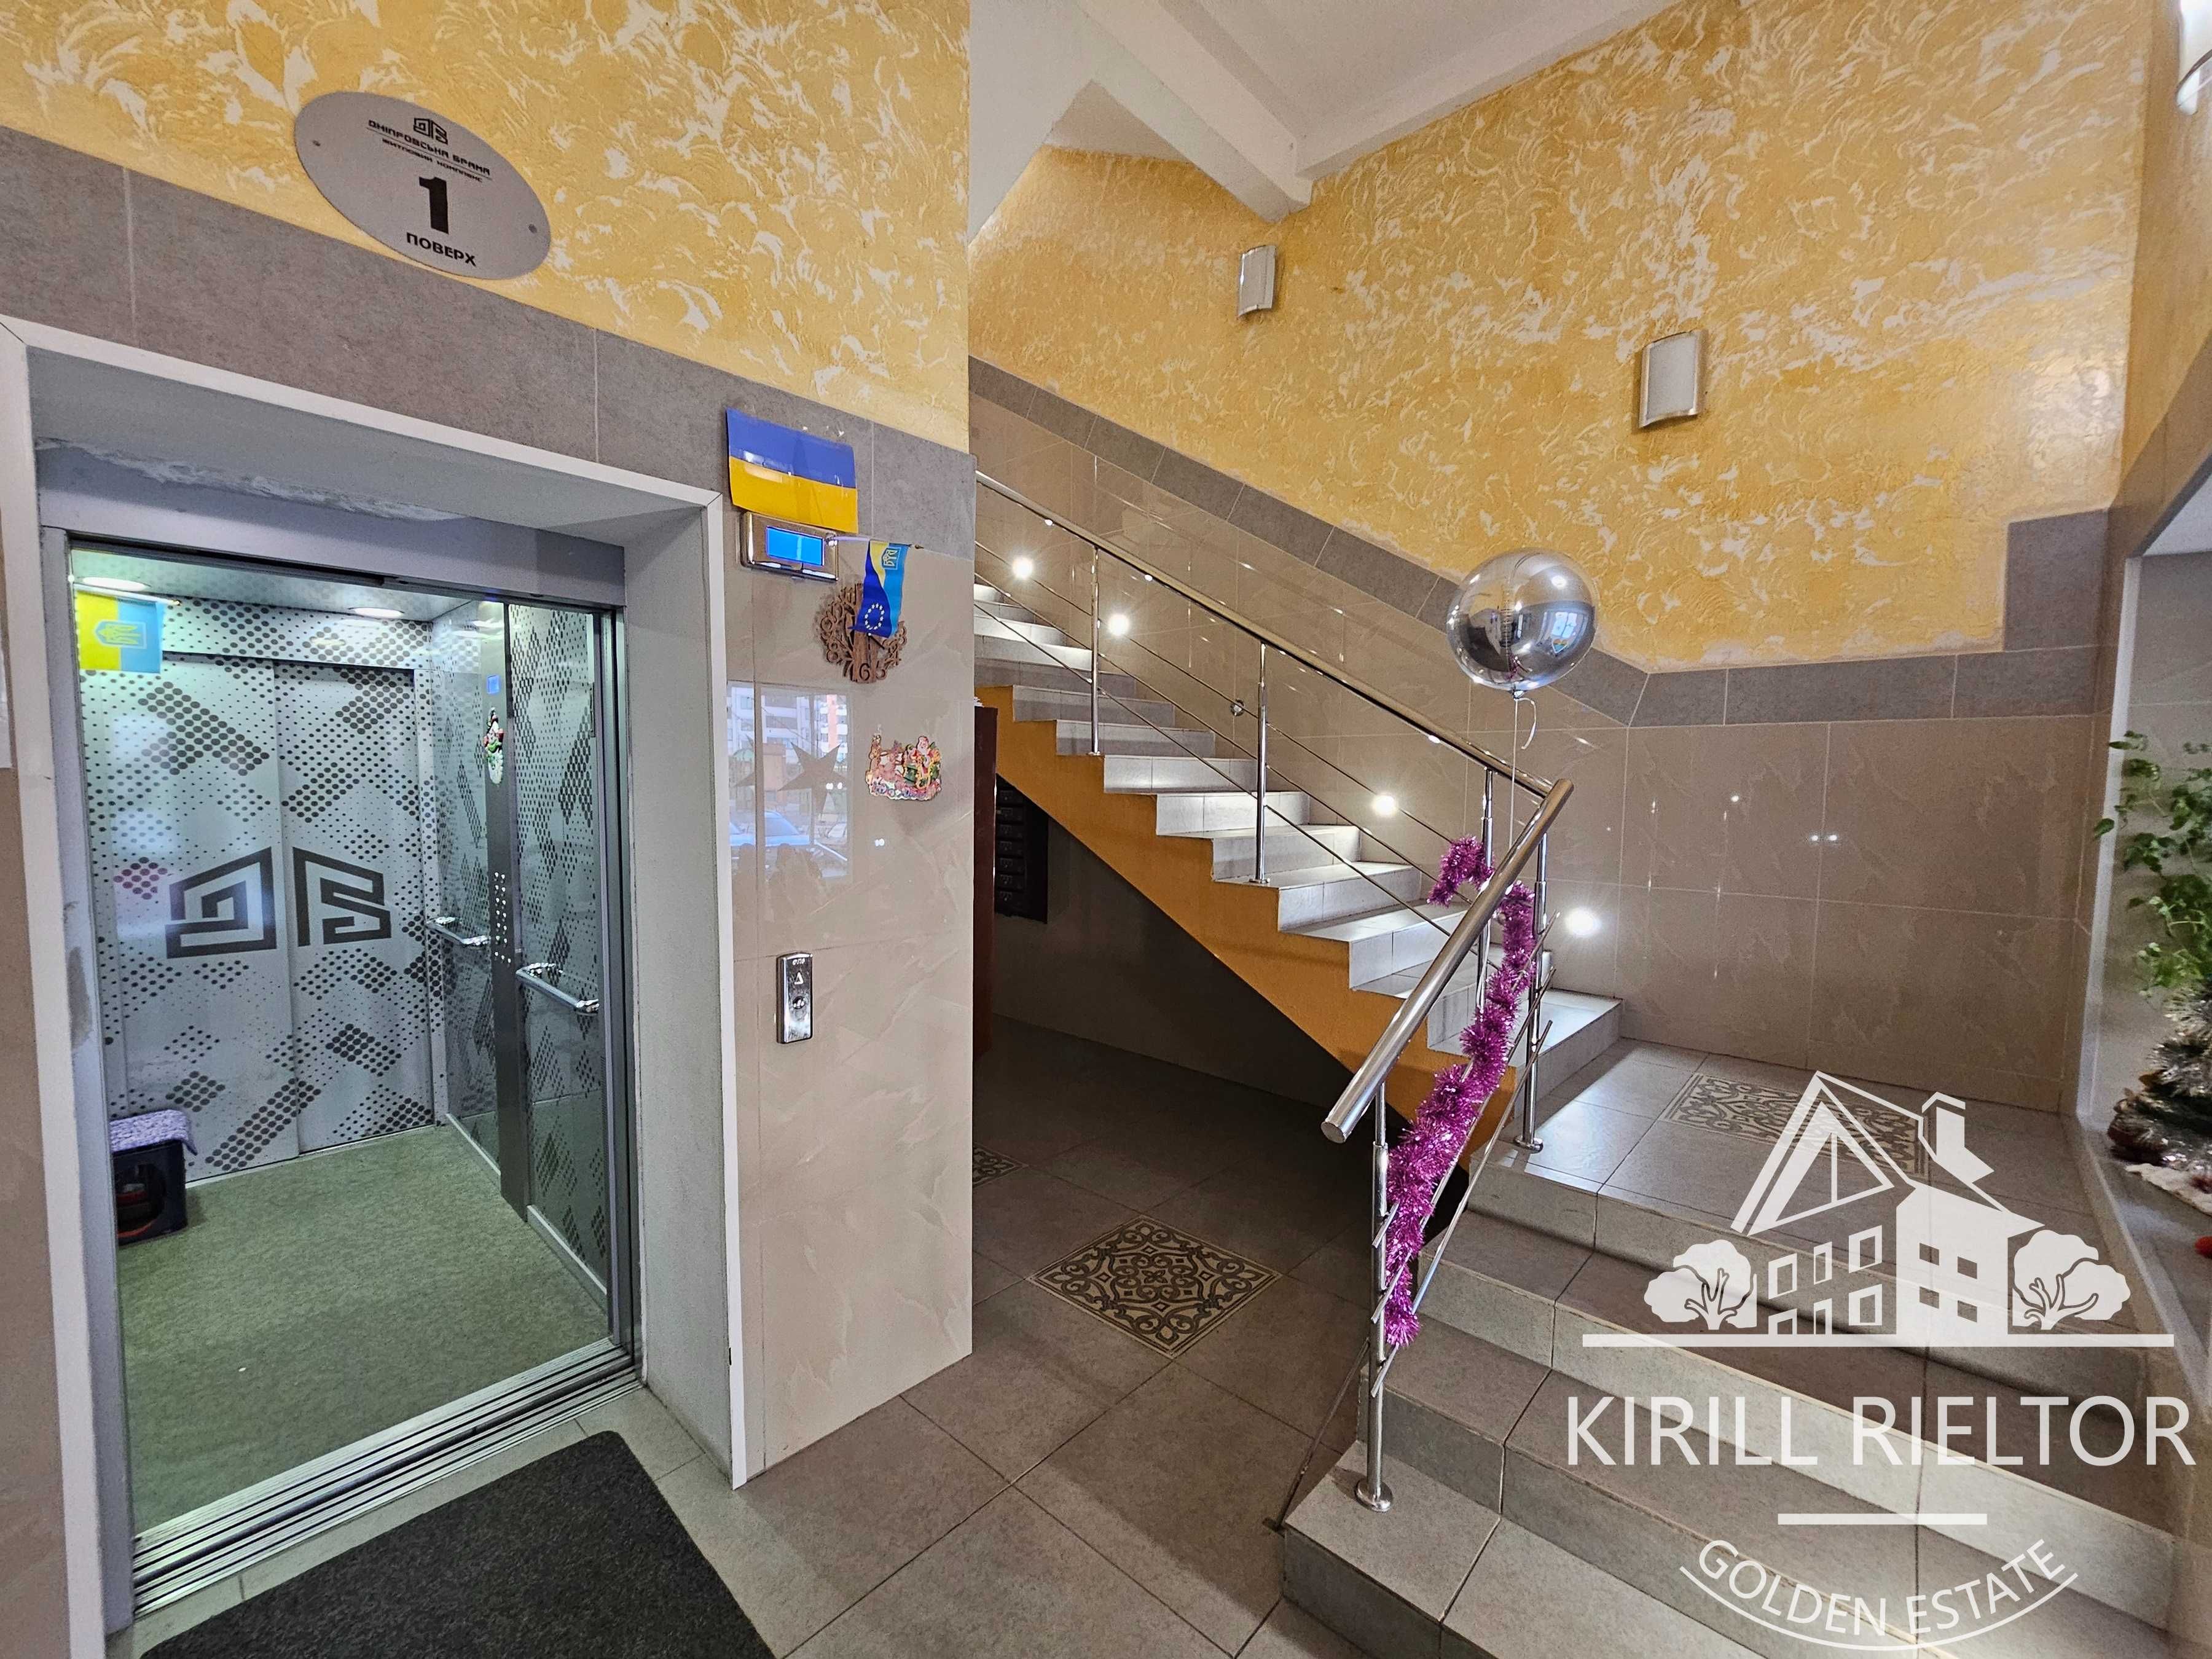 Продается 2-х комнатная квартира с ремонтом в жк "Днепровская Брама"